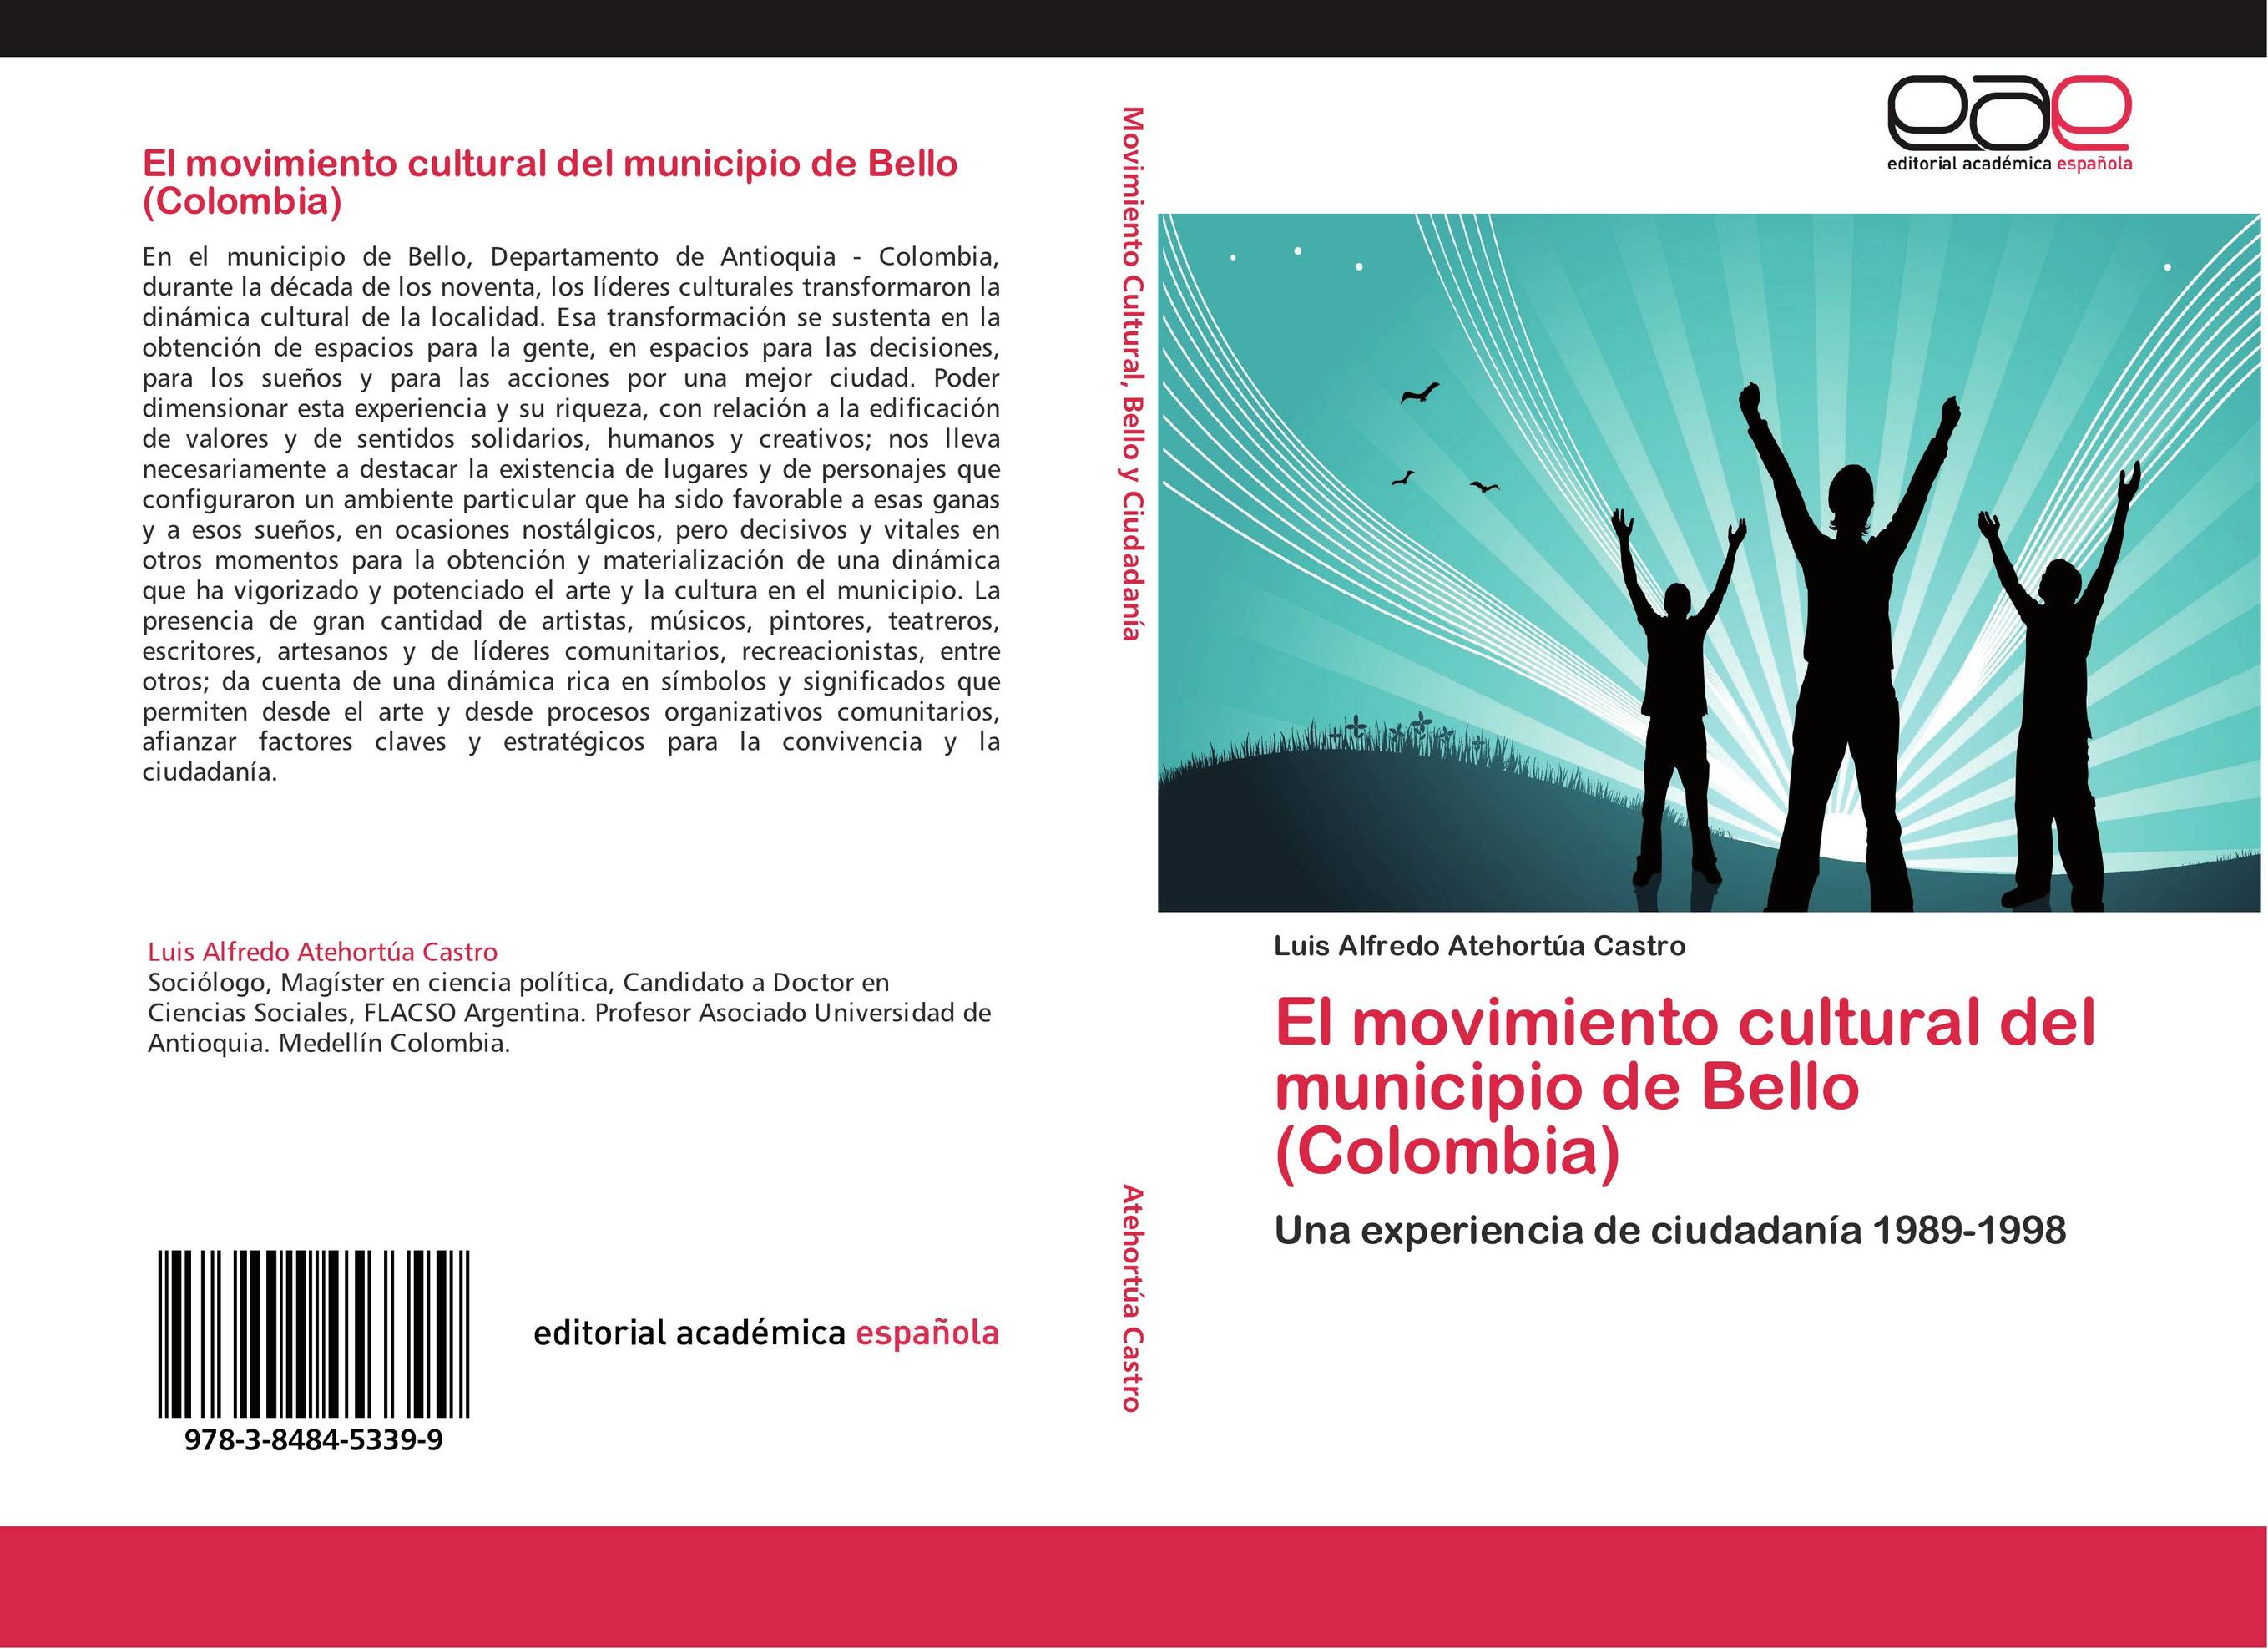 El movimiento cultural del municipio de Bello (Colombia)